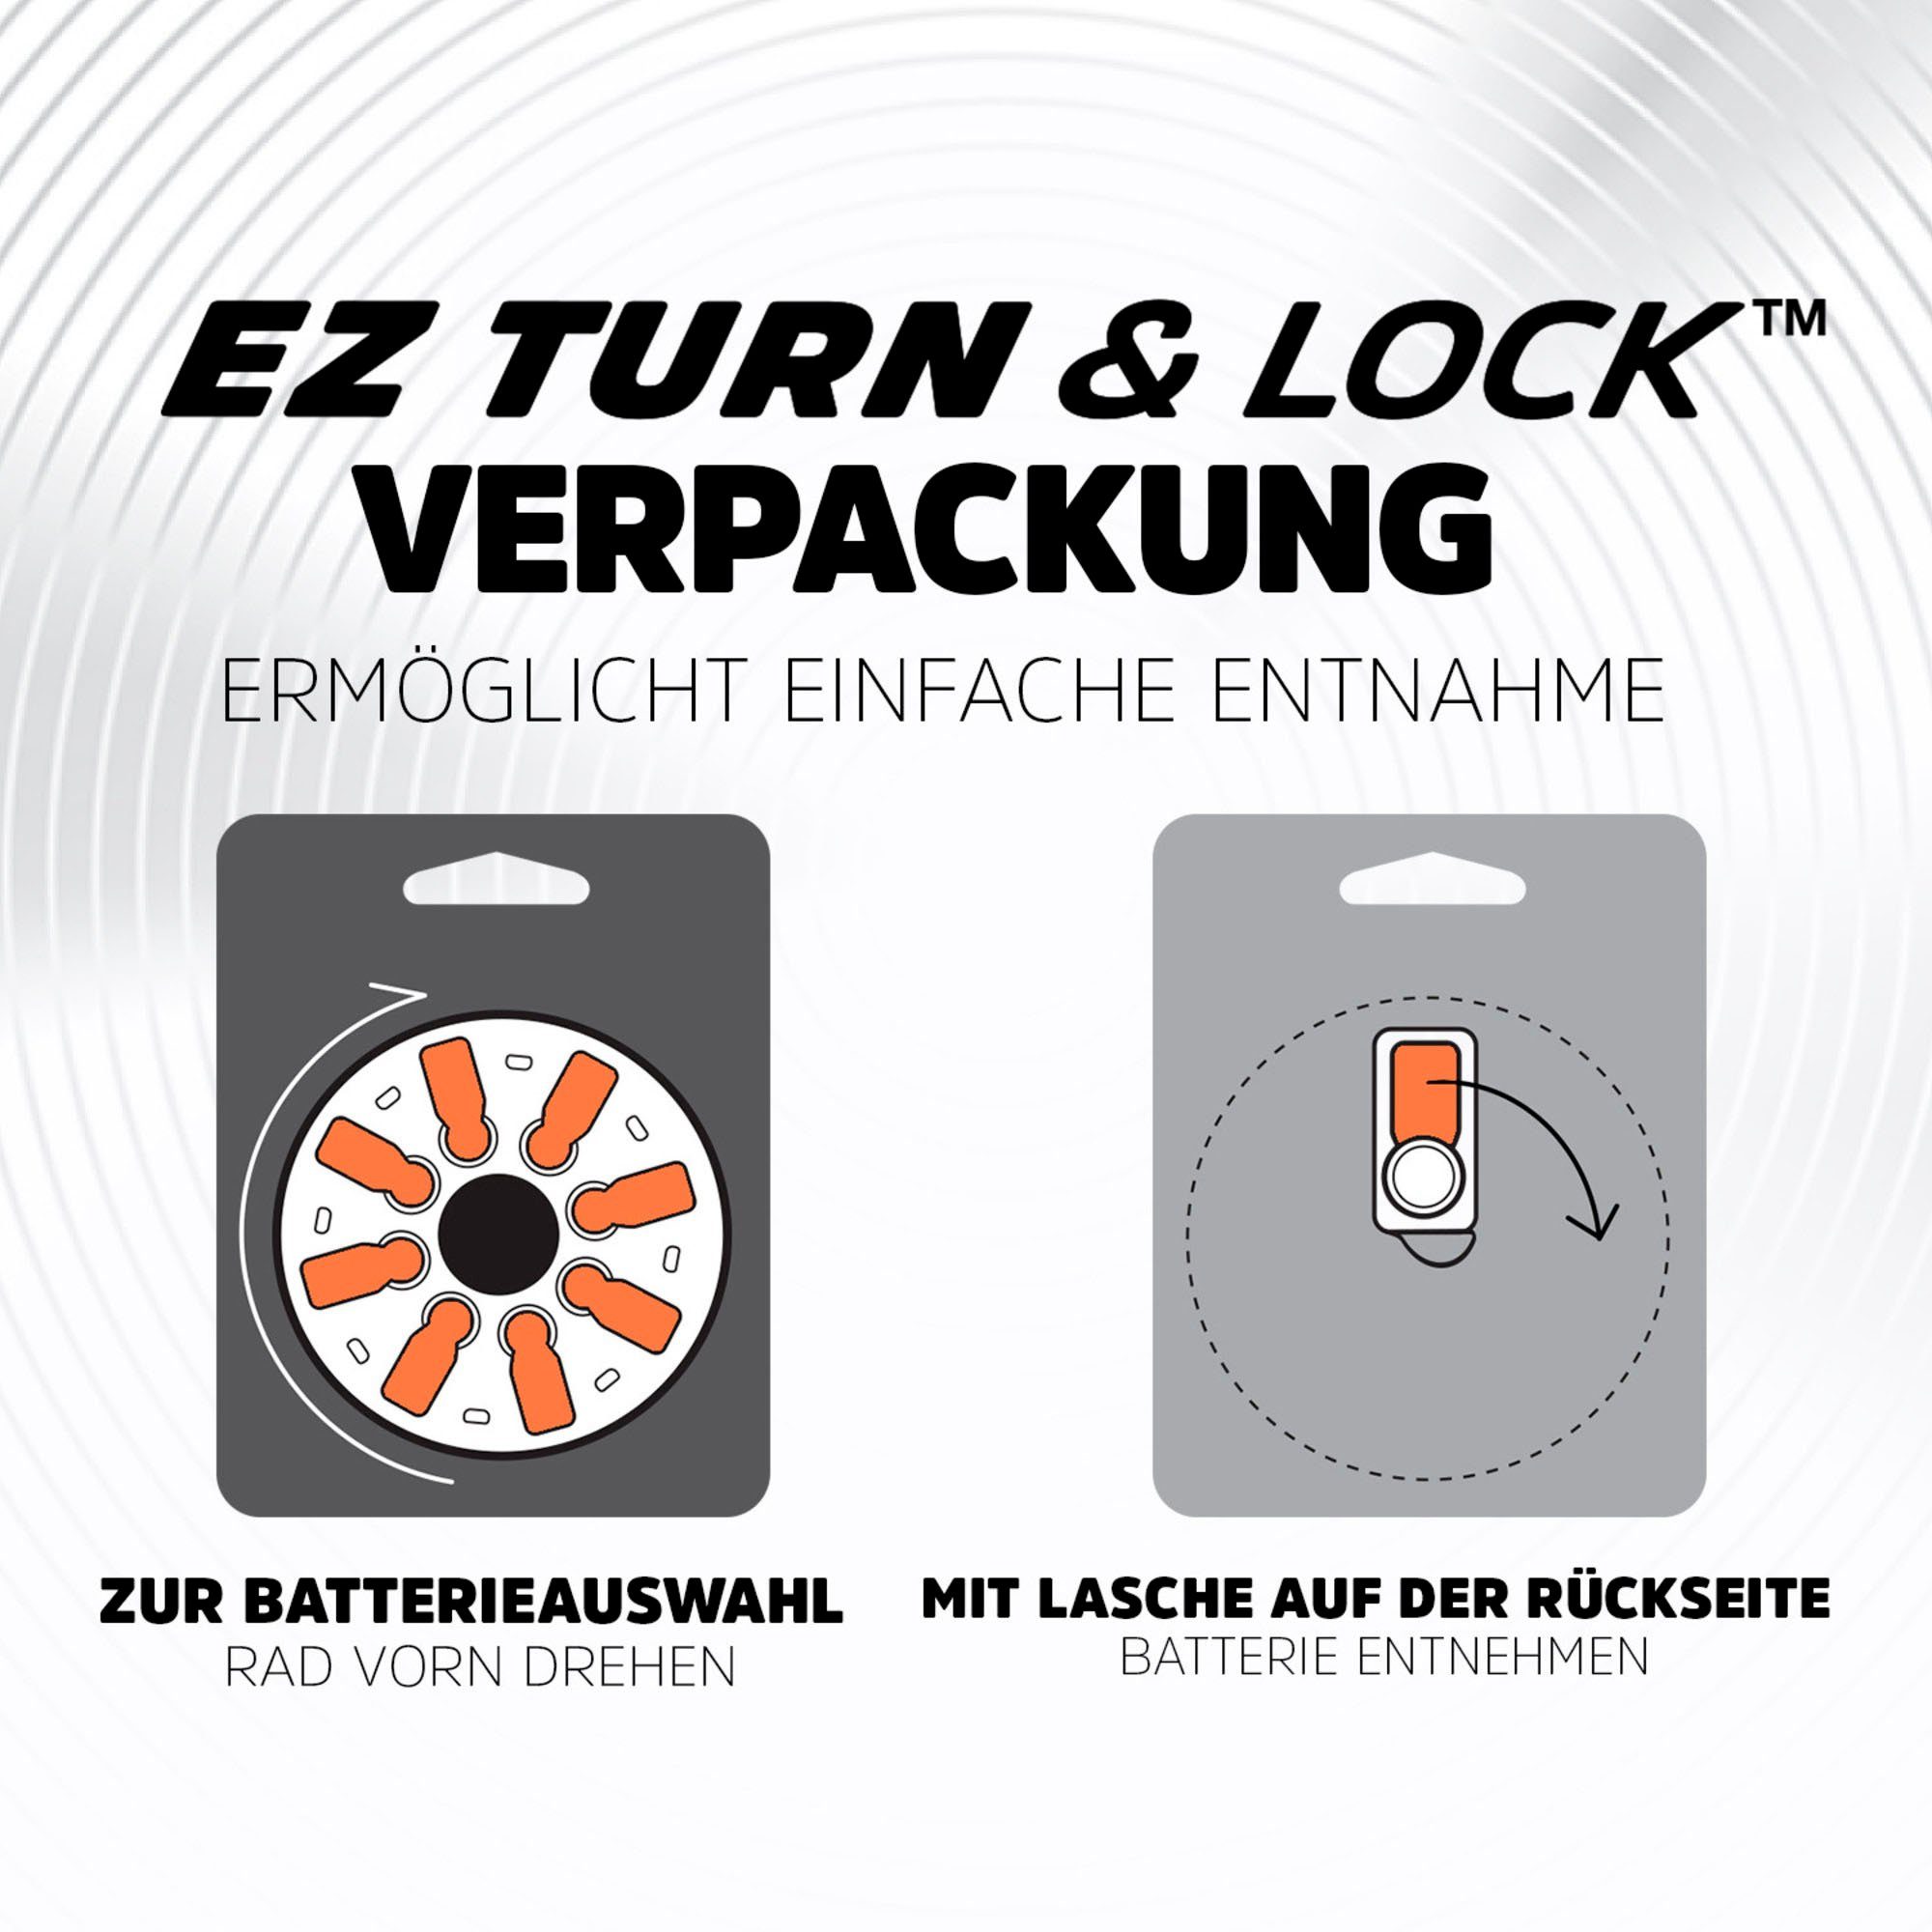 Batterie, Energizer 16 (1,4 Pack Zinc-Air Turn V, Hörgerätebatterie ENR (312) PR41 EZ Lock St) & 16er